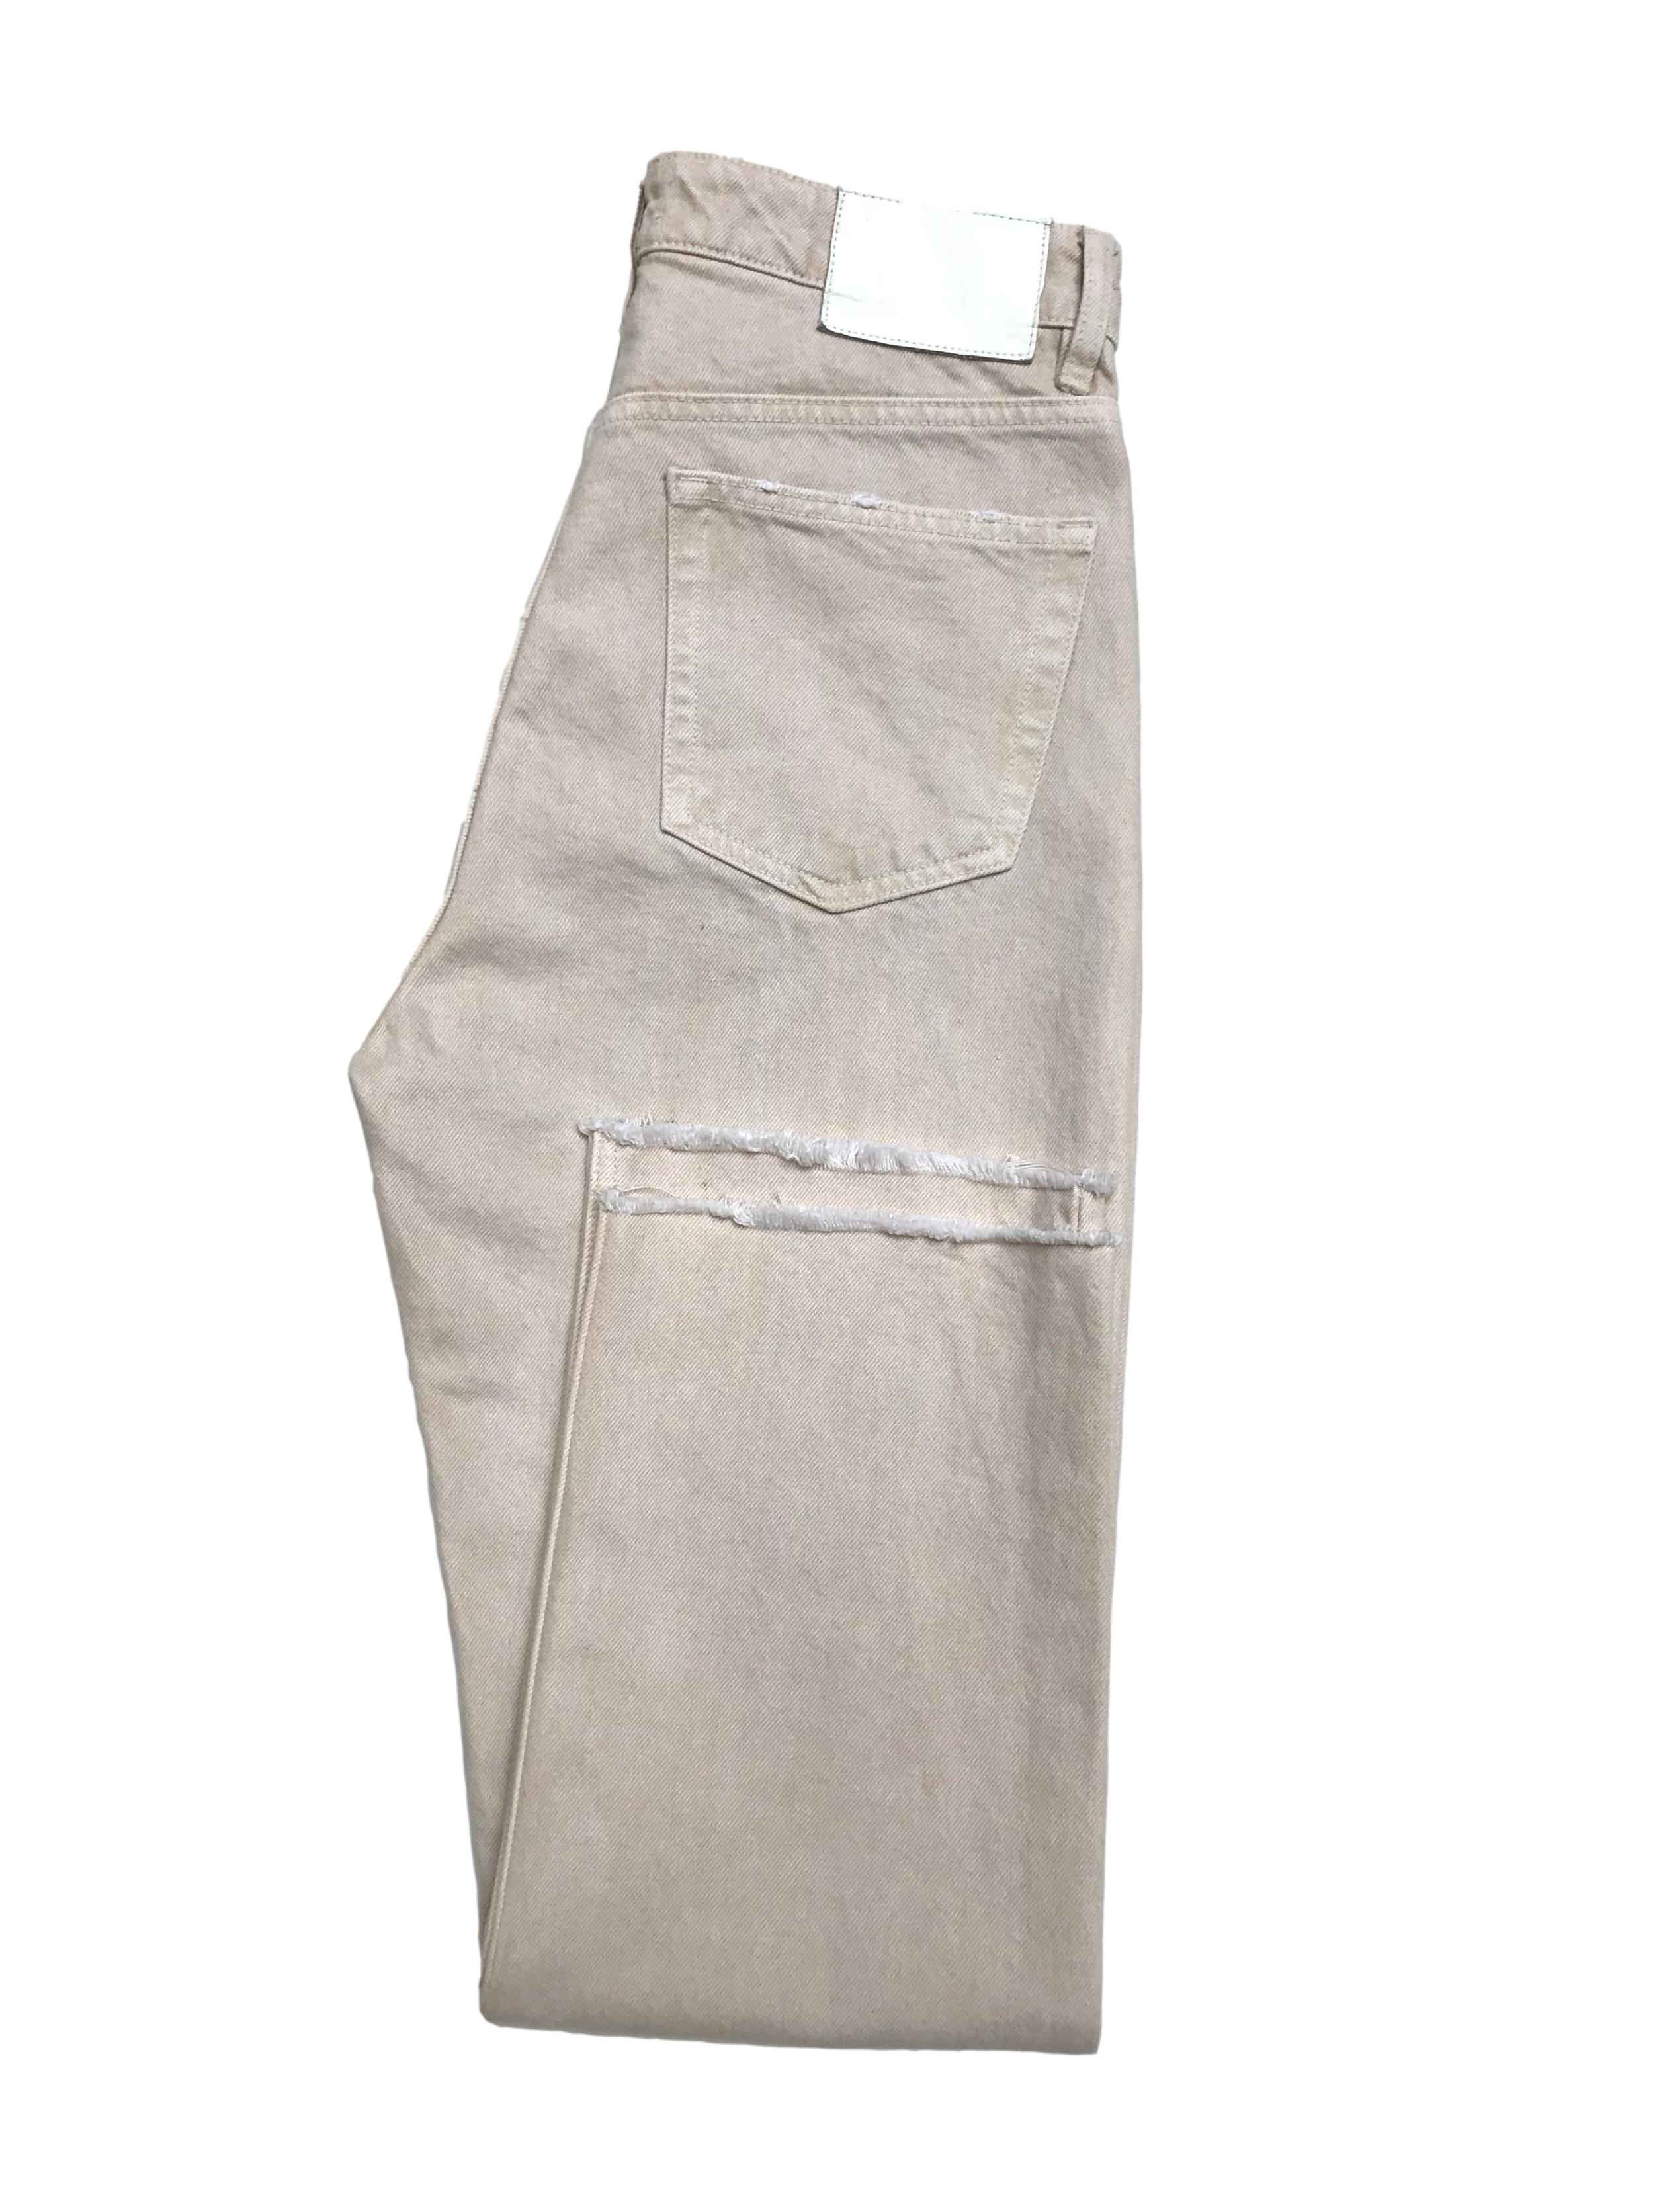 Pantalón Zara denim crema efecto lavado, a la cintura, pierna recta y basta desflecada. Cintura 76cm